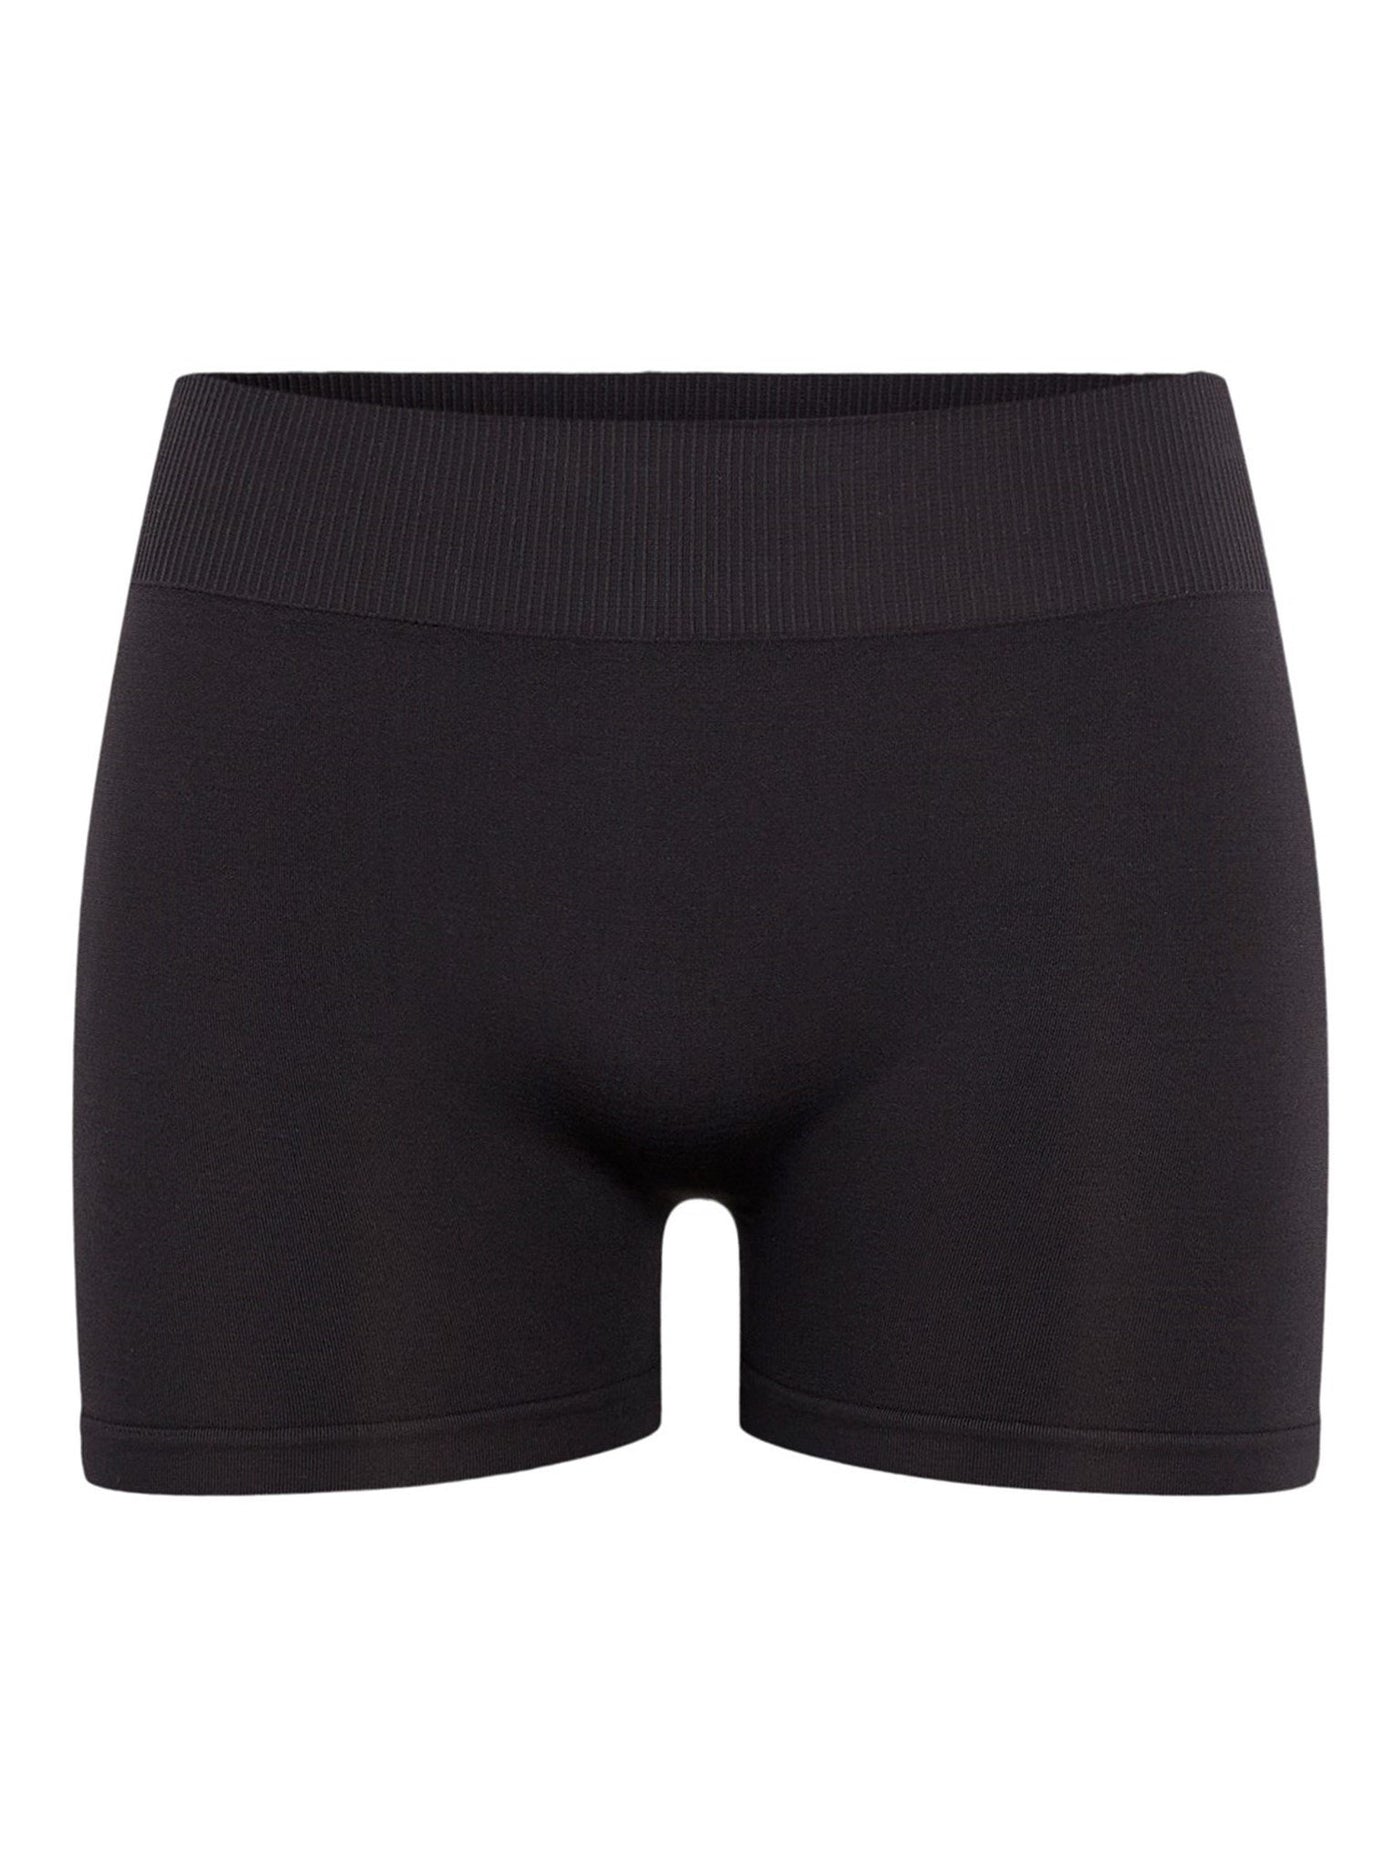 Tarmfunktion Compulsion I særdeleshed London mini shorts - Sort | TeeShoppen